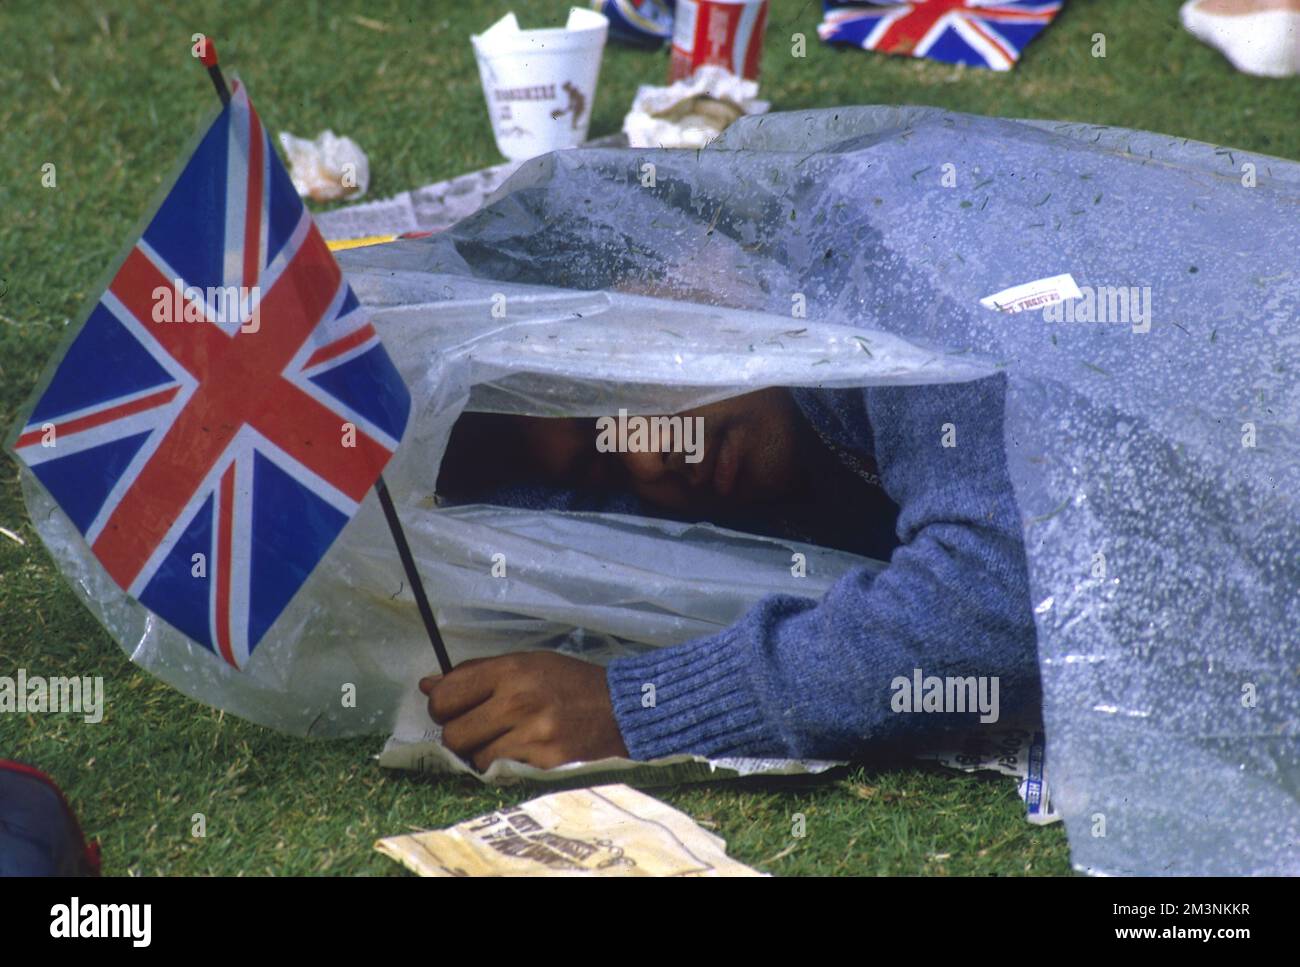 Un homme dort sous une feuille de plastique alors qu'il sécurise son terrain d'observation pour assister au mariage du prince Andrew, du duc de York et de Sarah Ferguson le 23 juillet 1986. Patriotique même dans le sommeil, il saisit d'une main un drapeau de l'Union Jack. 1986 Banque D'Images